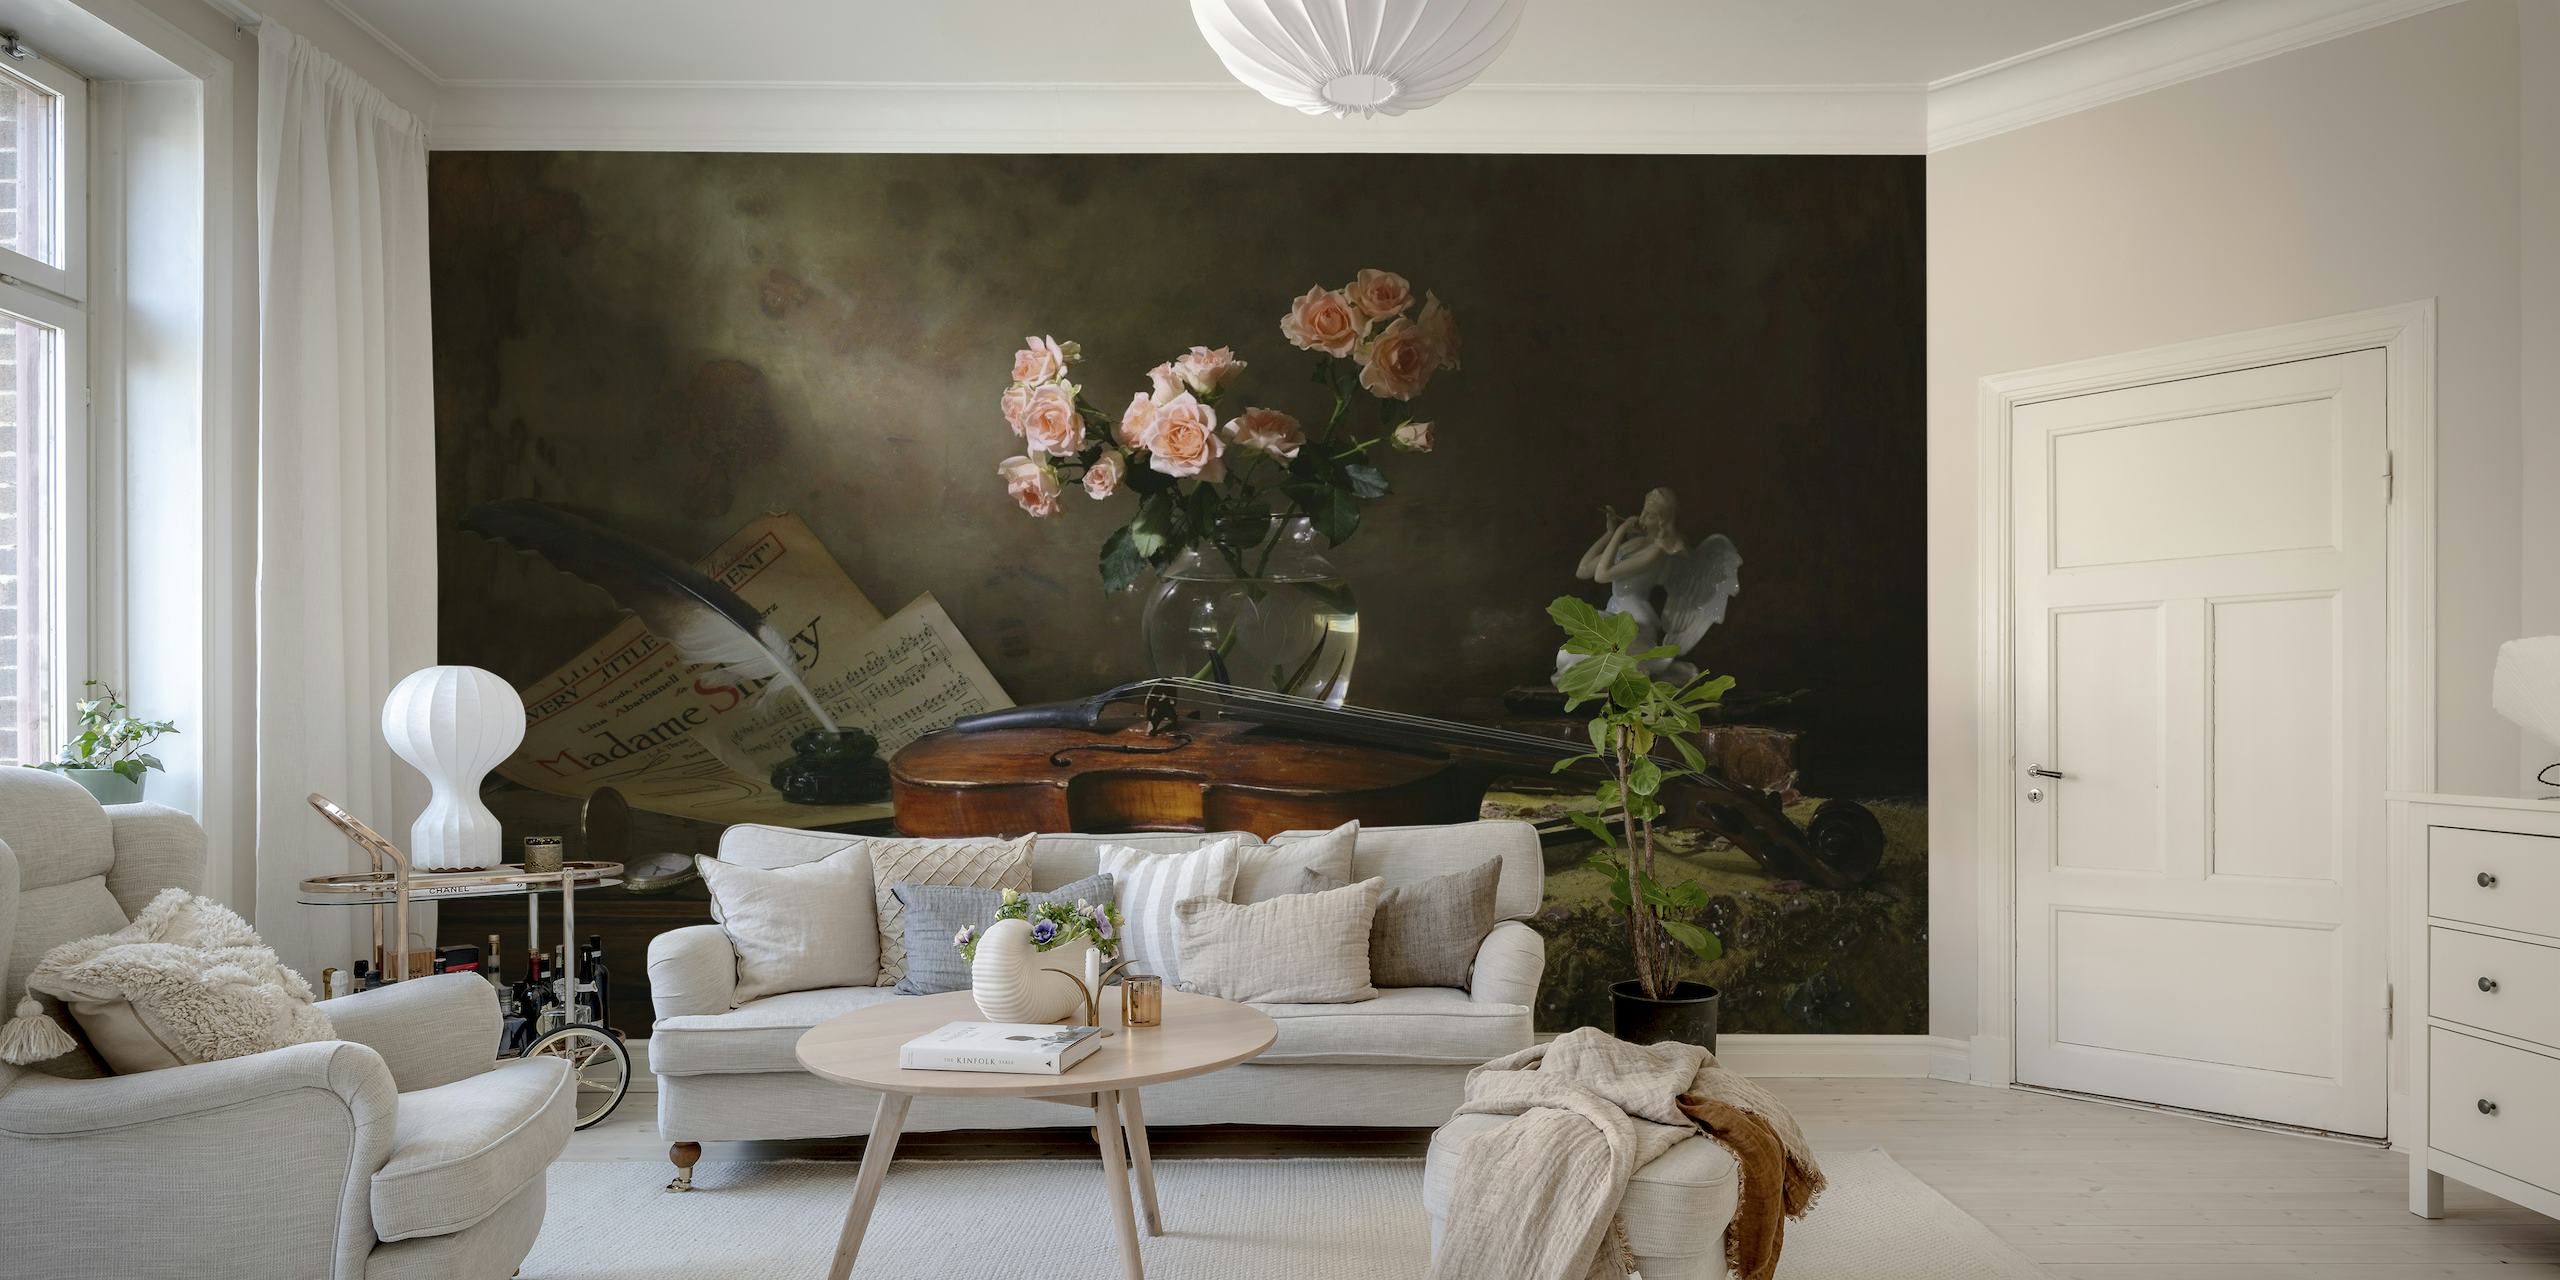 Stilleven muurschildering met een viool en rozen met een vintage uitstraling